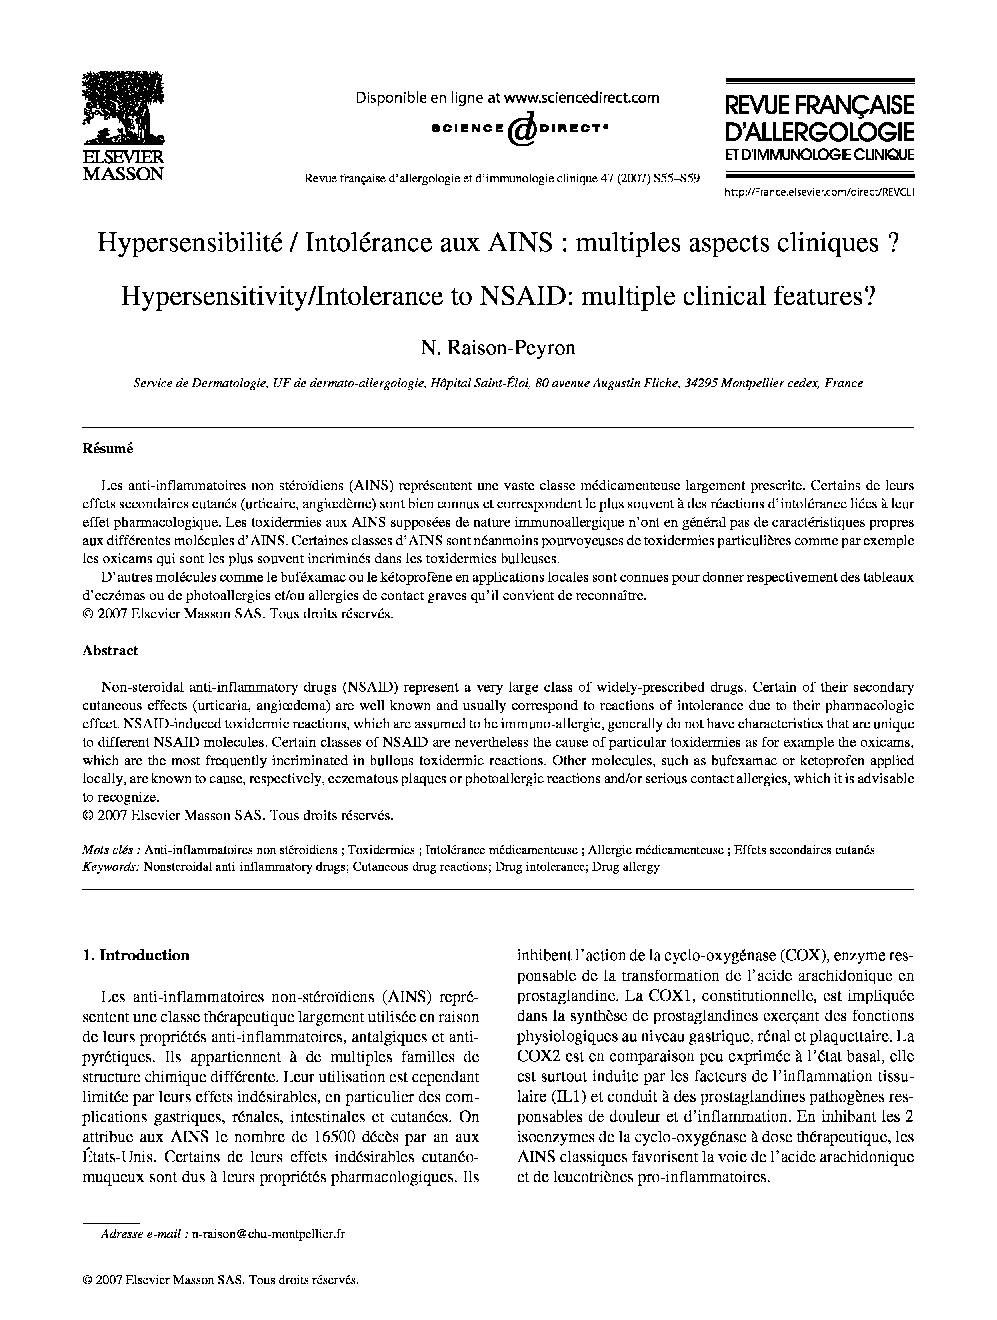 Hypersensibilité/Intolérance aux AINS : multiples aspects cliniques?